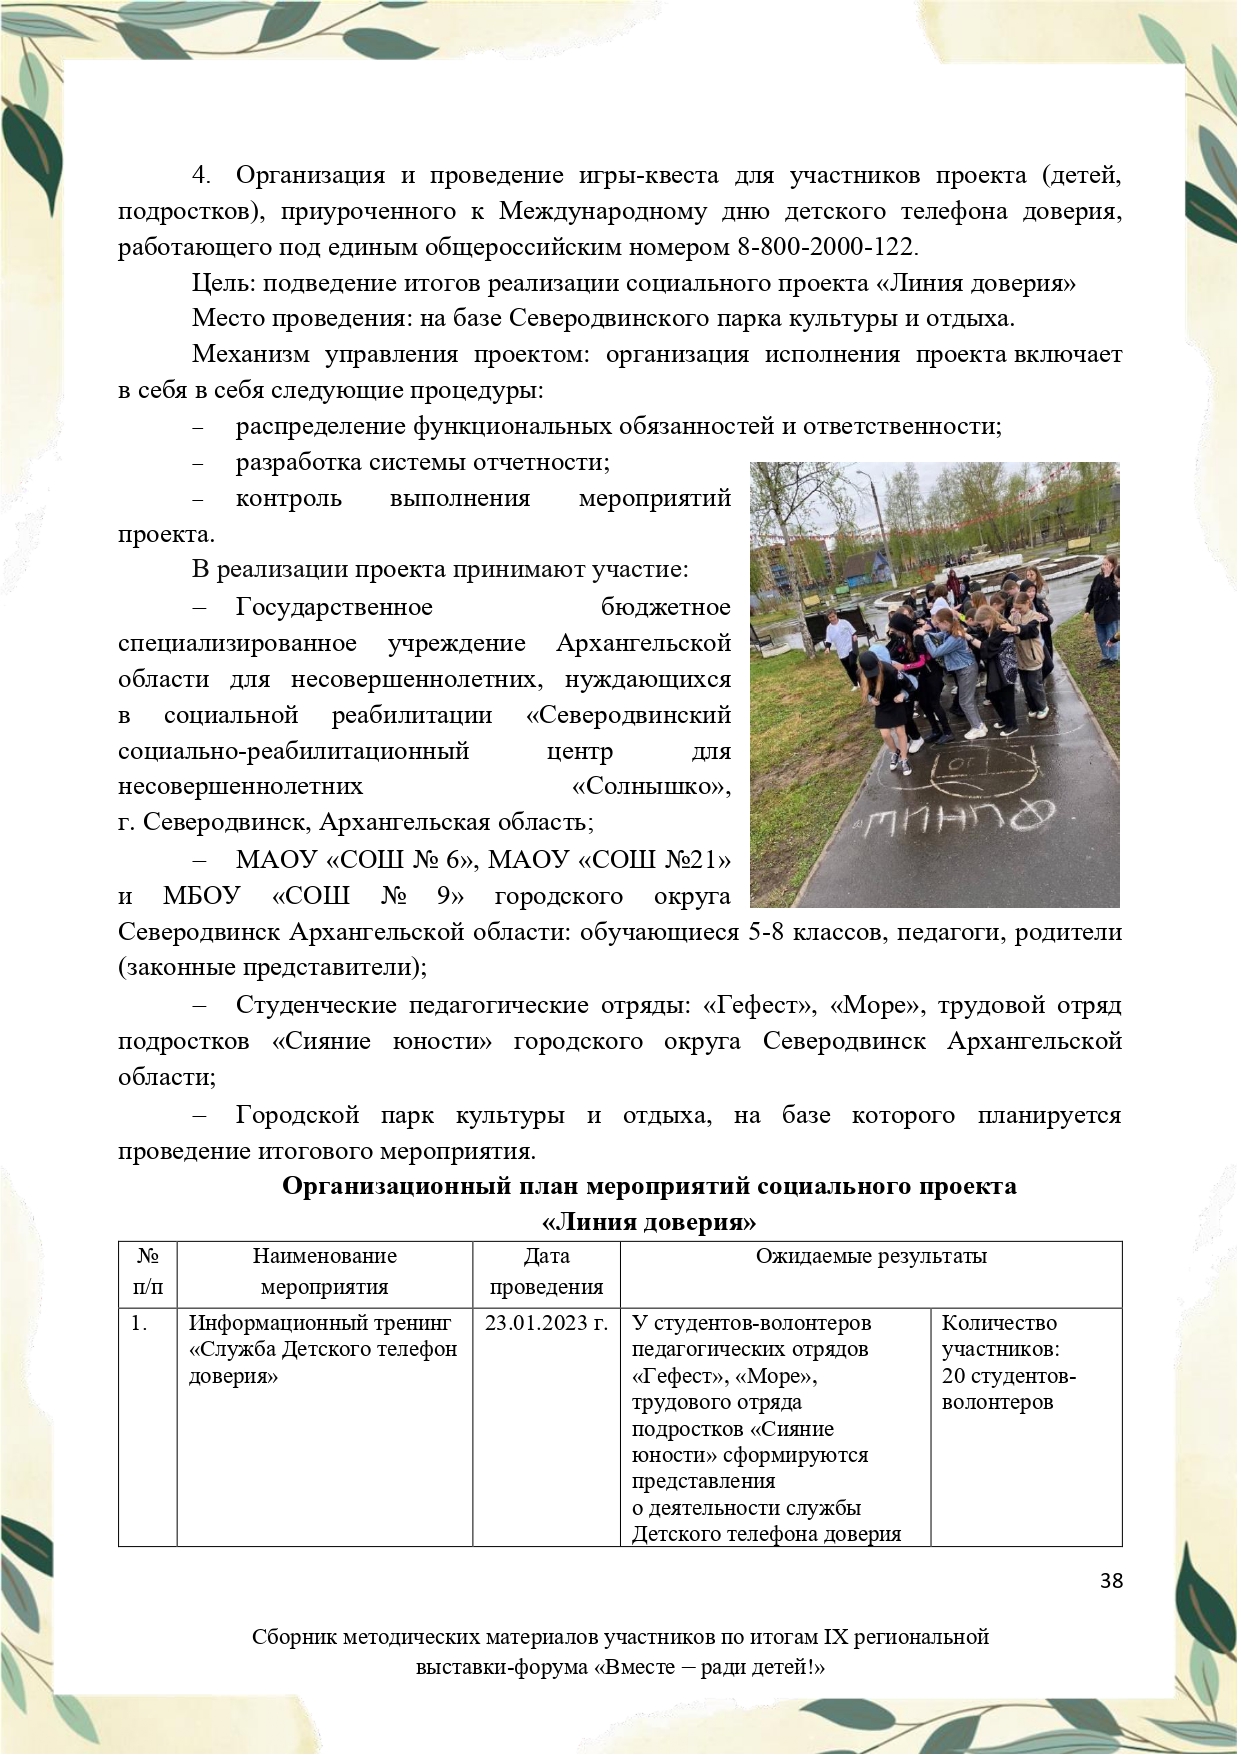 Sbornik_metodicheskikh_materialov_uchastnikov_IX_regionalnoy_vystavki-foruma_Vmeste__radi_detey_33__2023_page-0038